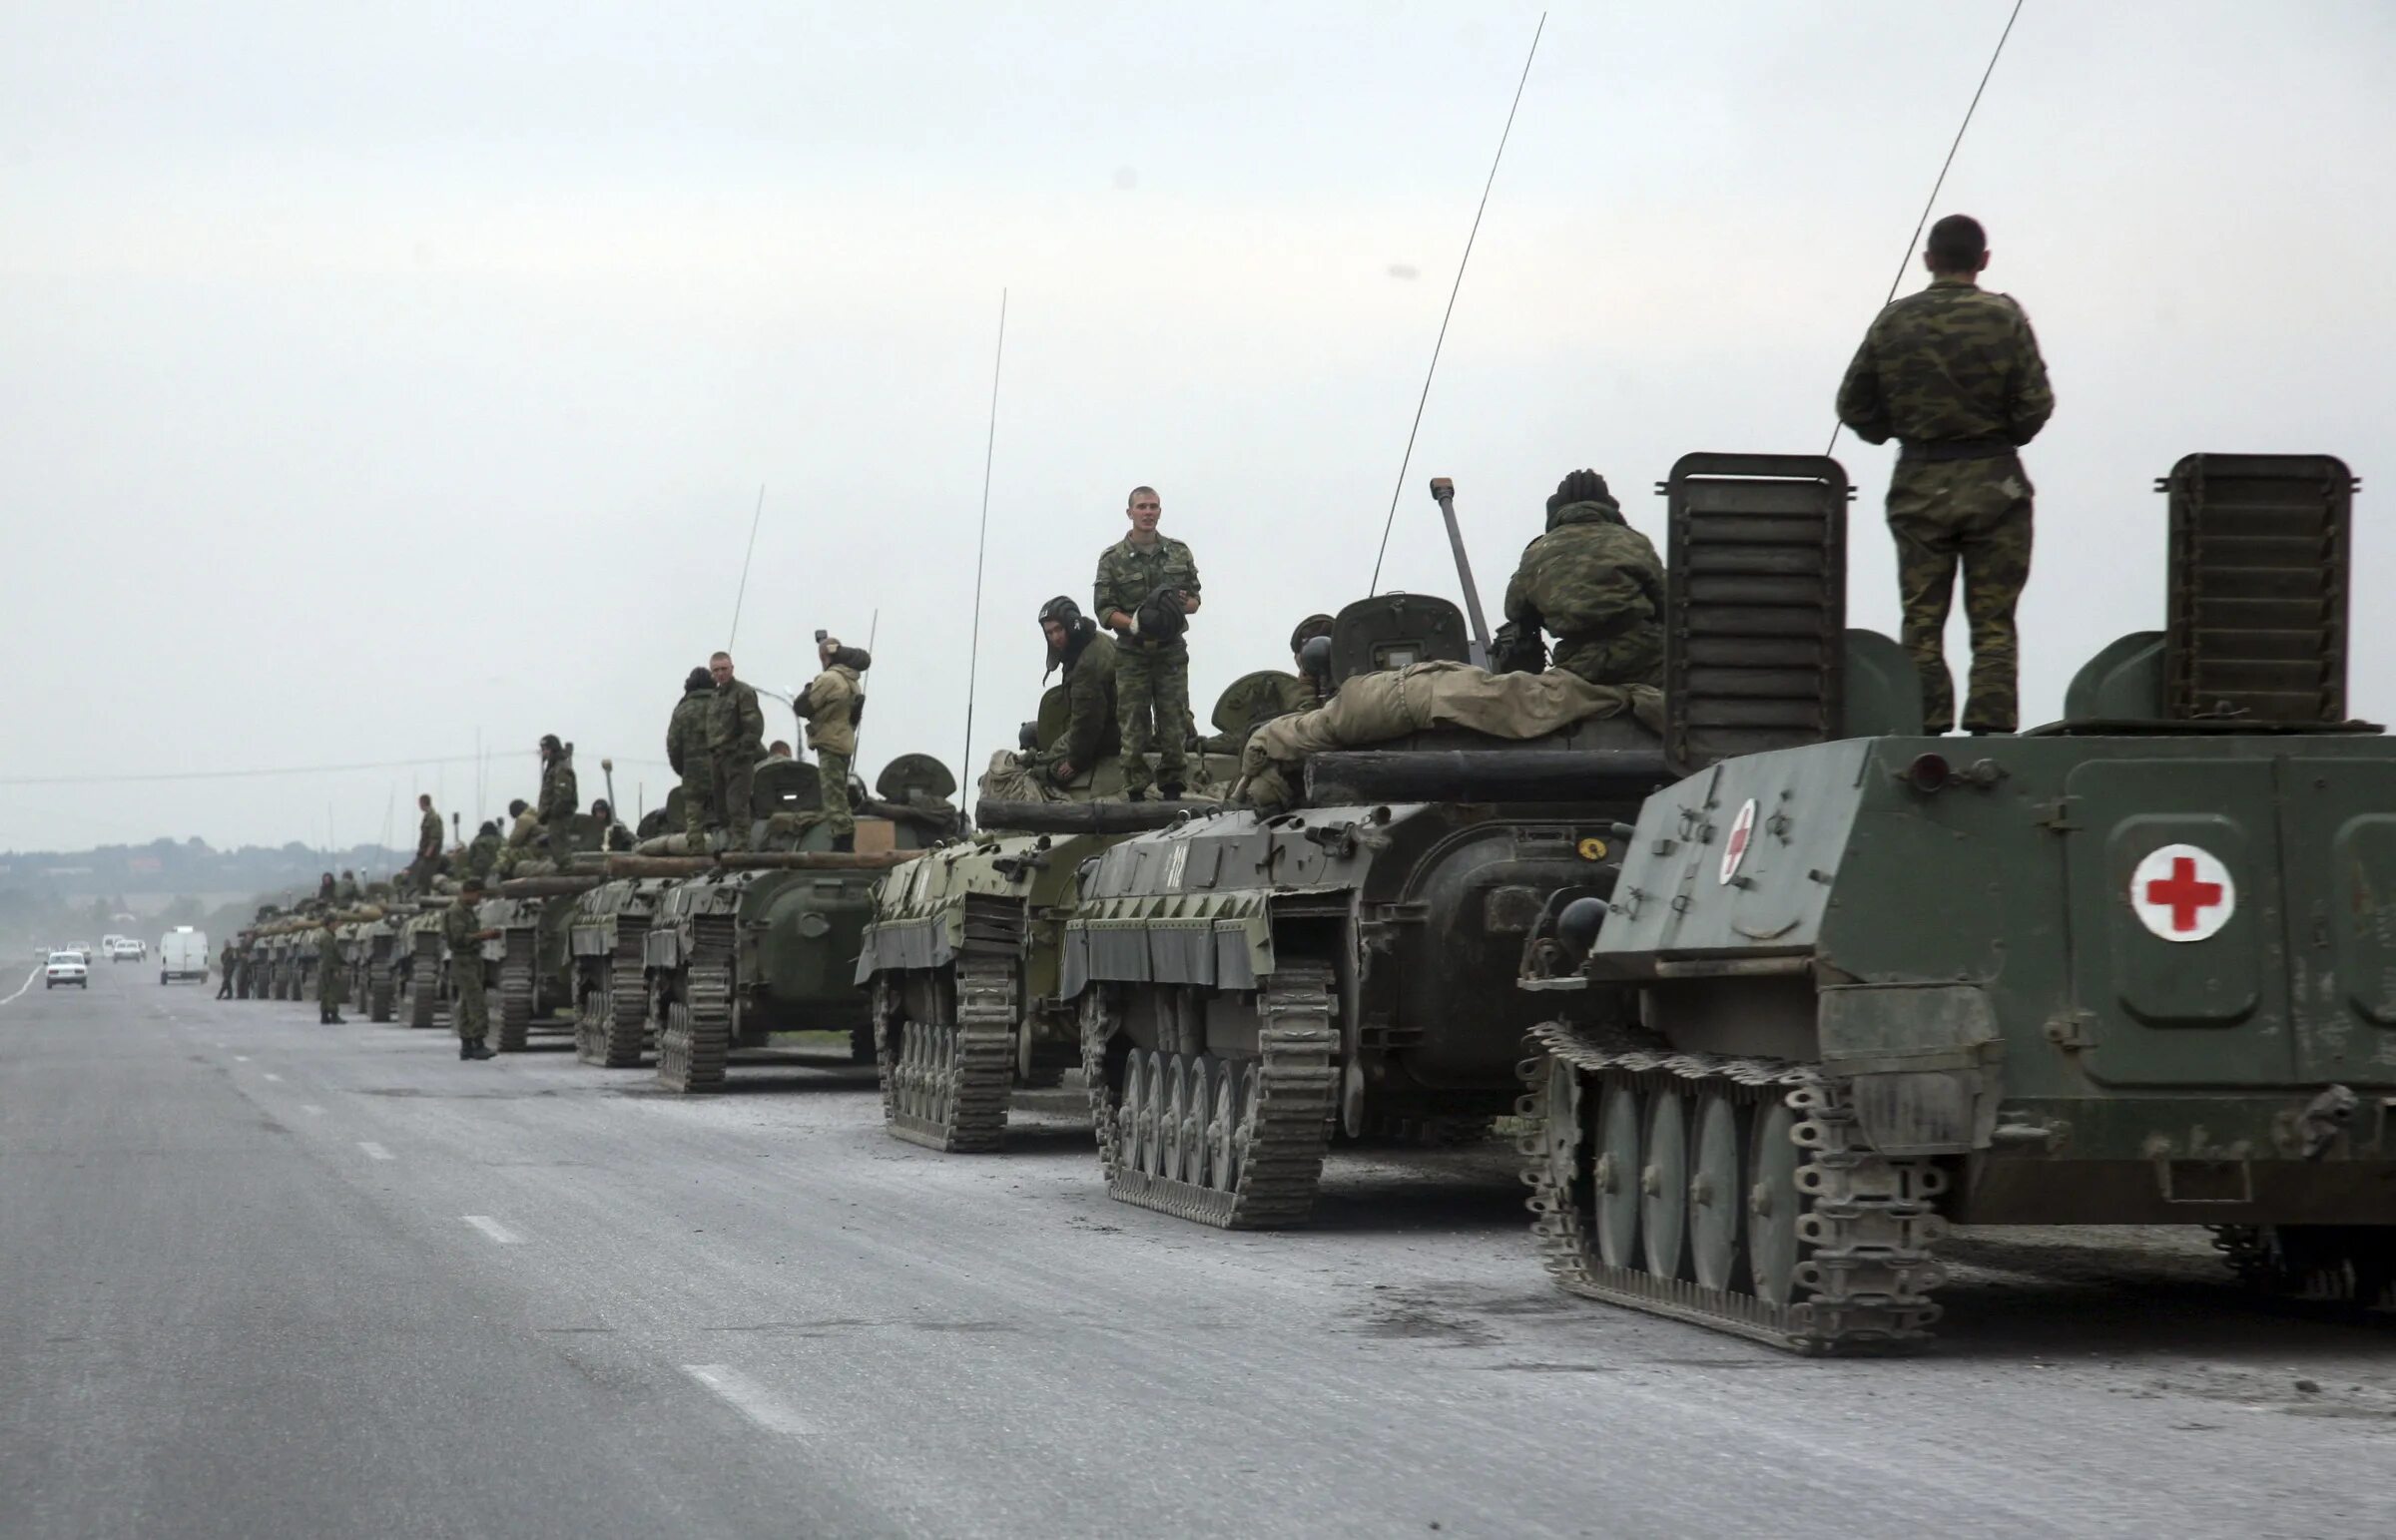 Колонна военной техники в Южной Осетии 2008. Колонна Российской армии в Южной Осетии в 2008 году. Северная Осетия август 2008 колонна танков. Колонна РФ В Грузии 2008.